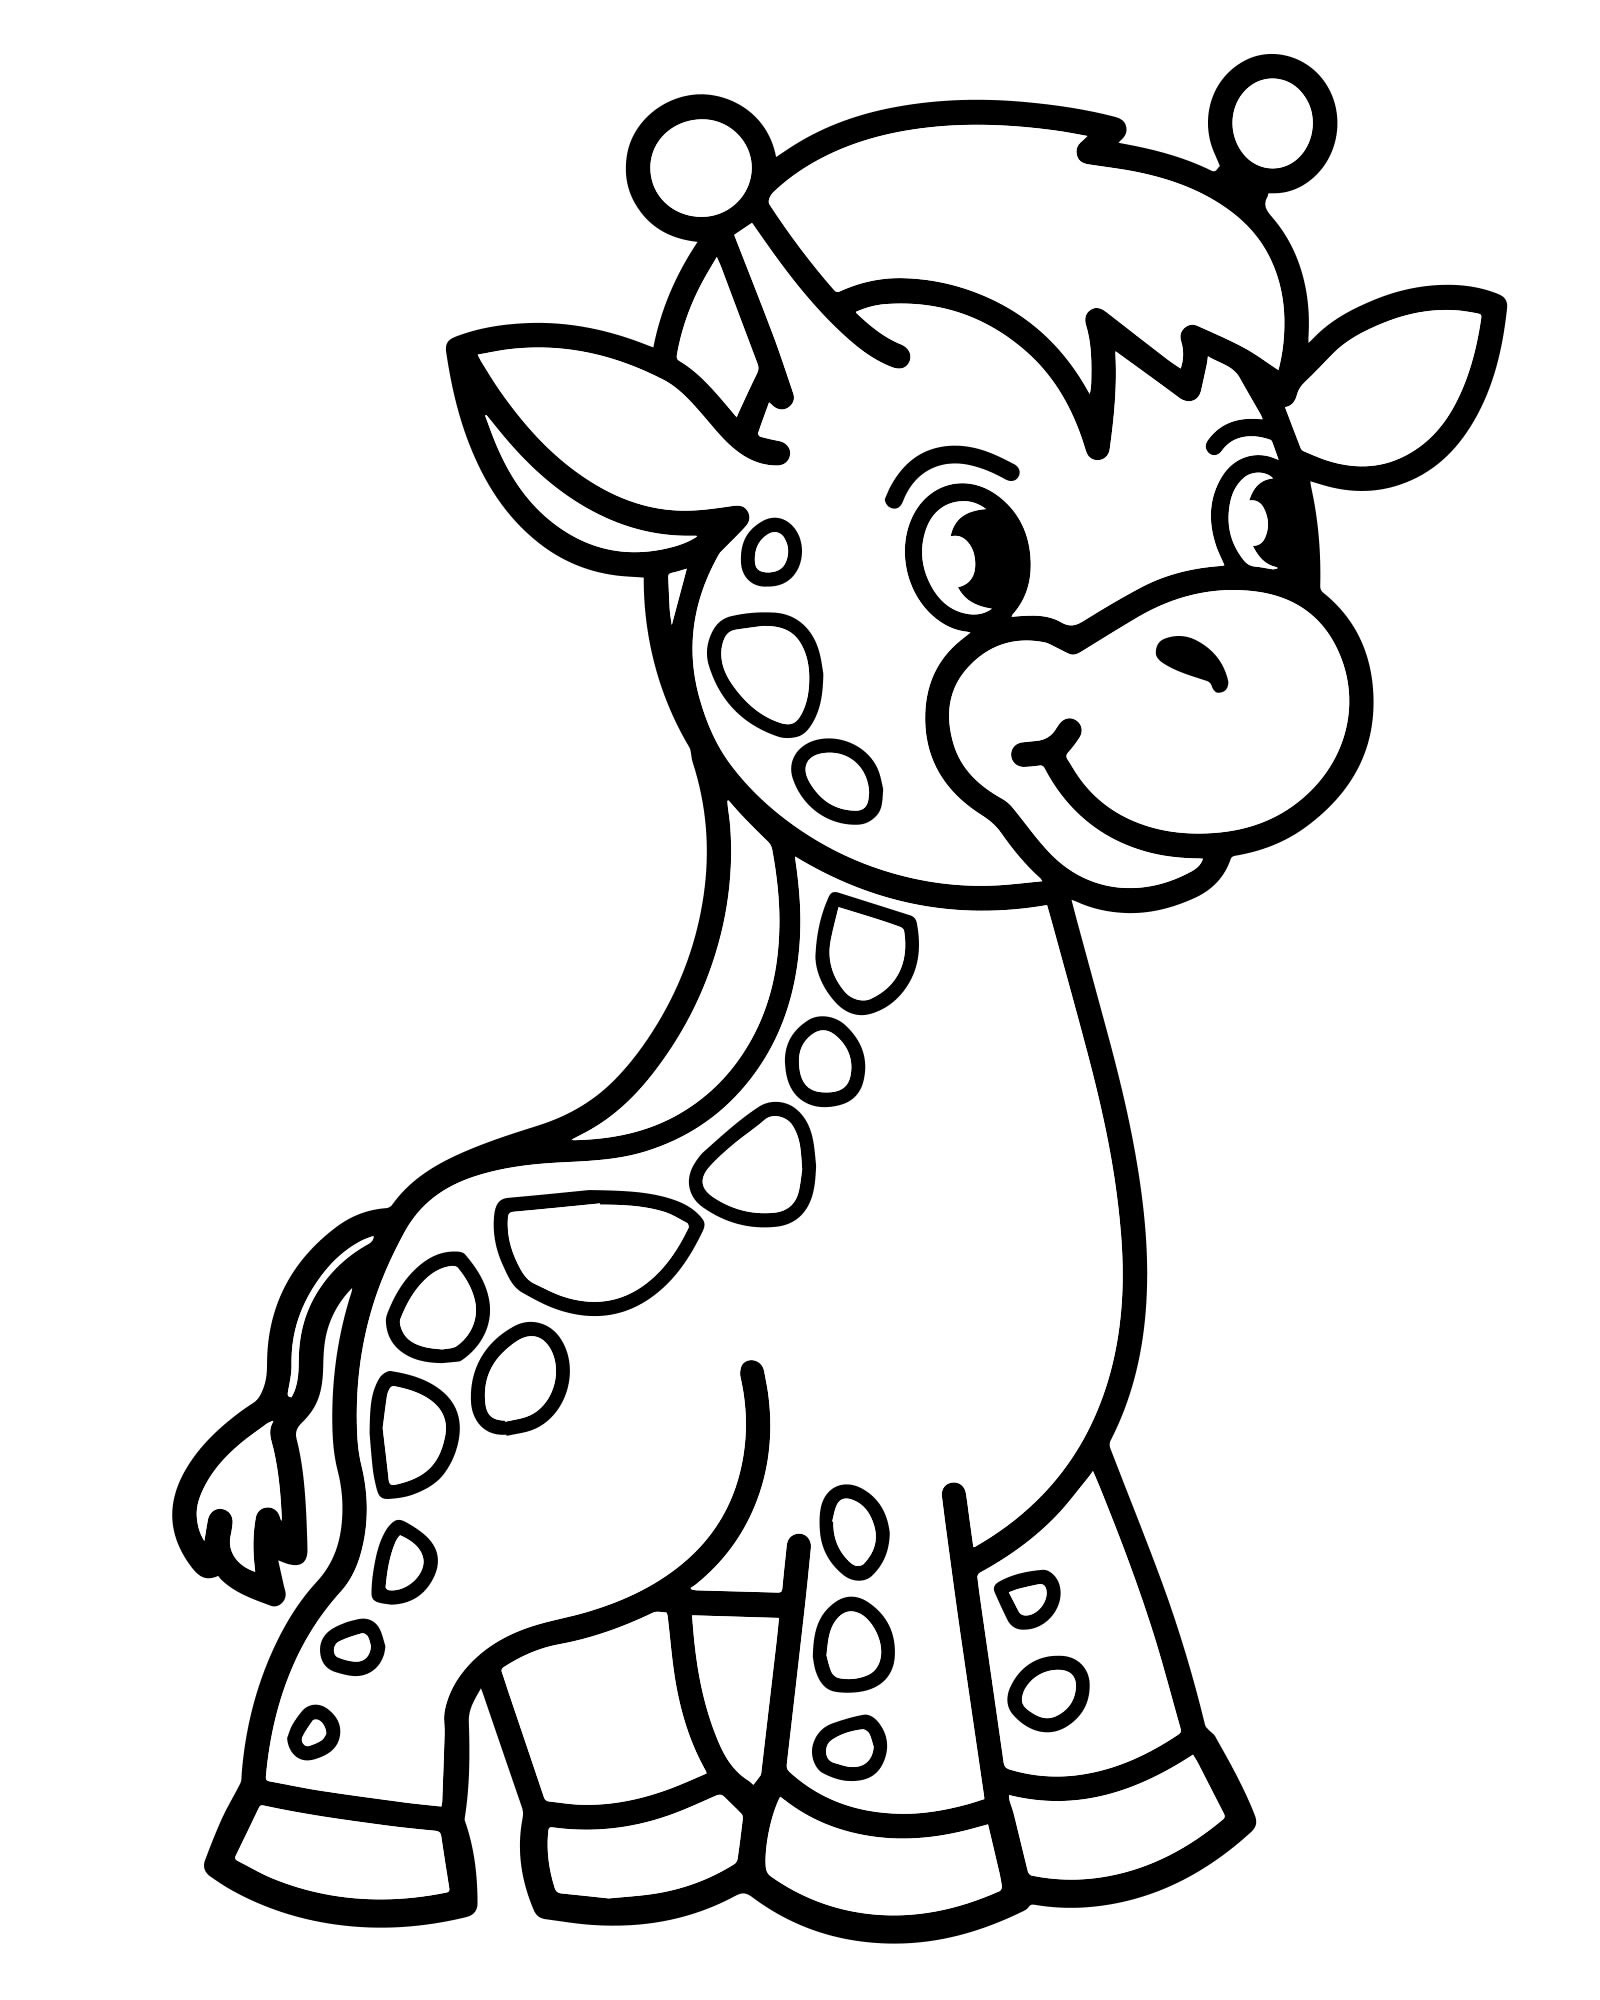 Раскраски Жираф для детей. Распечатать или скачать бесплатно